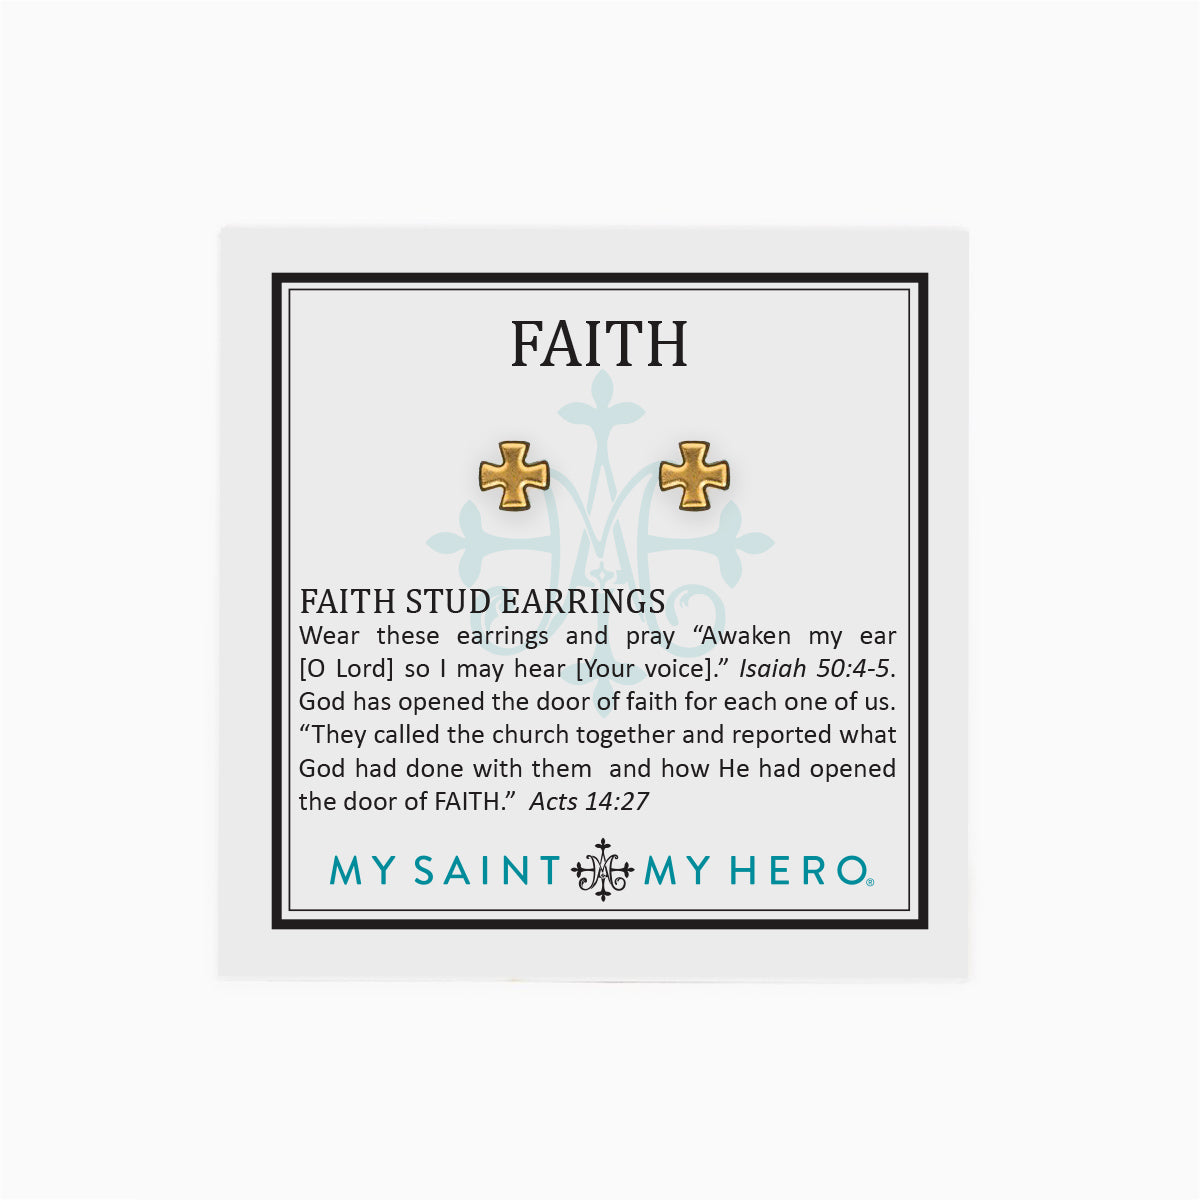 Faith Stud Earrings by My Saint My Hero